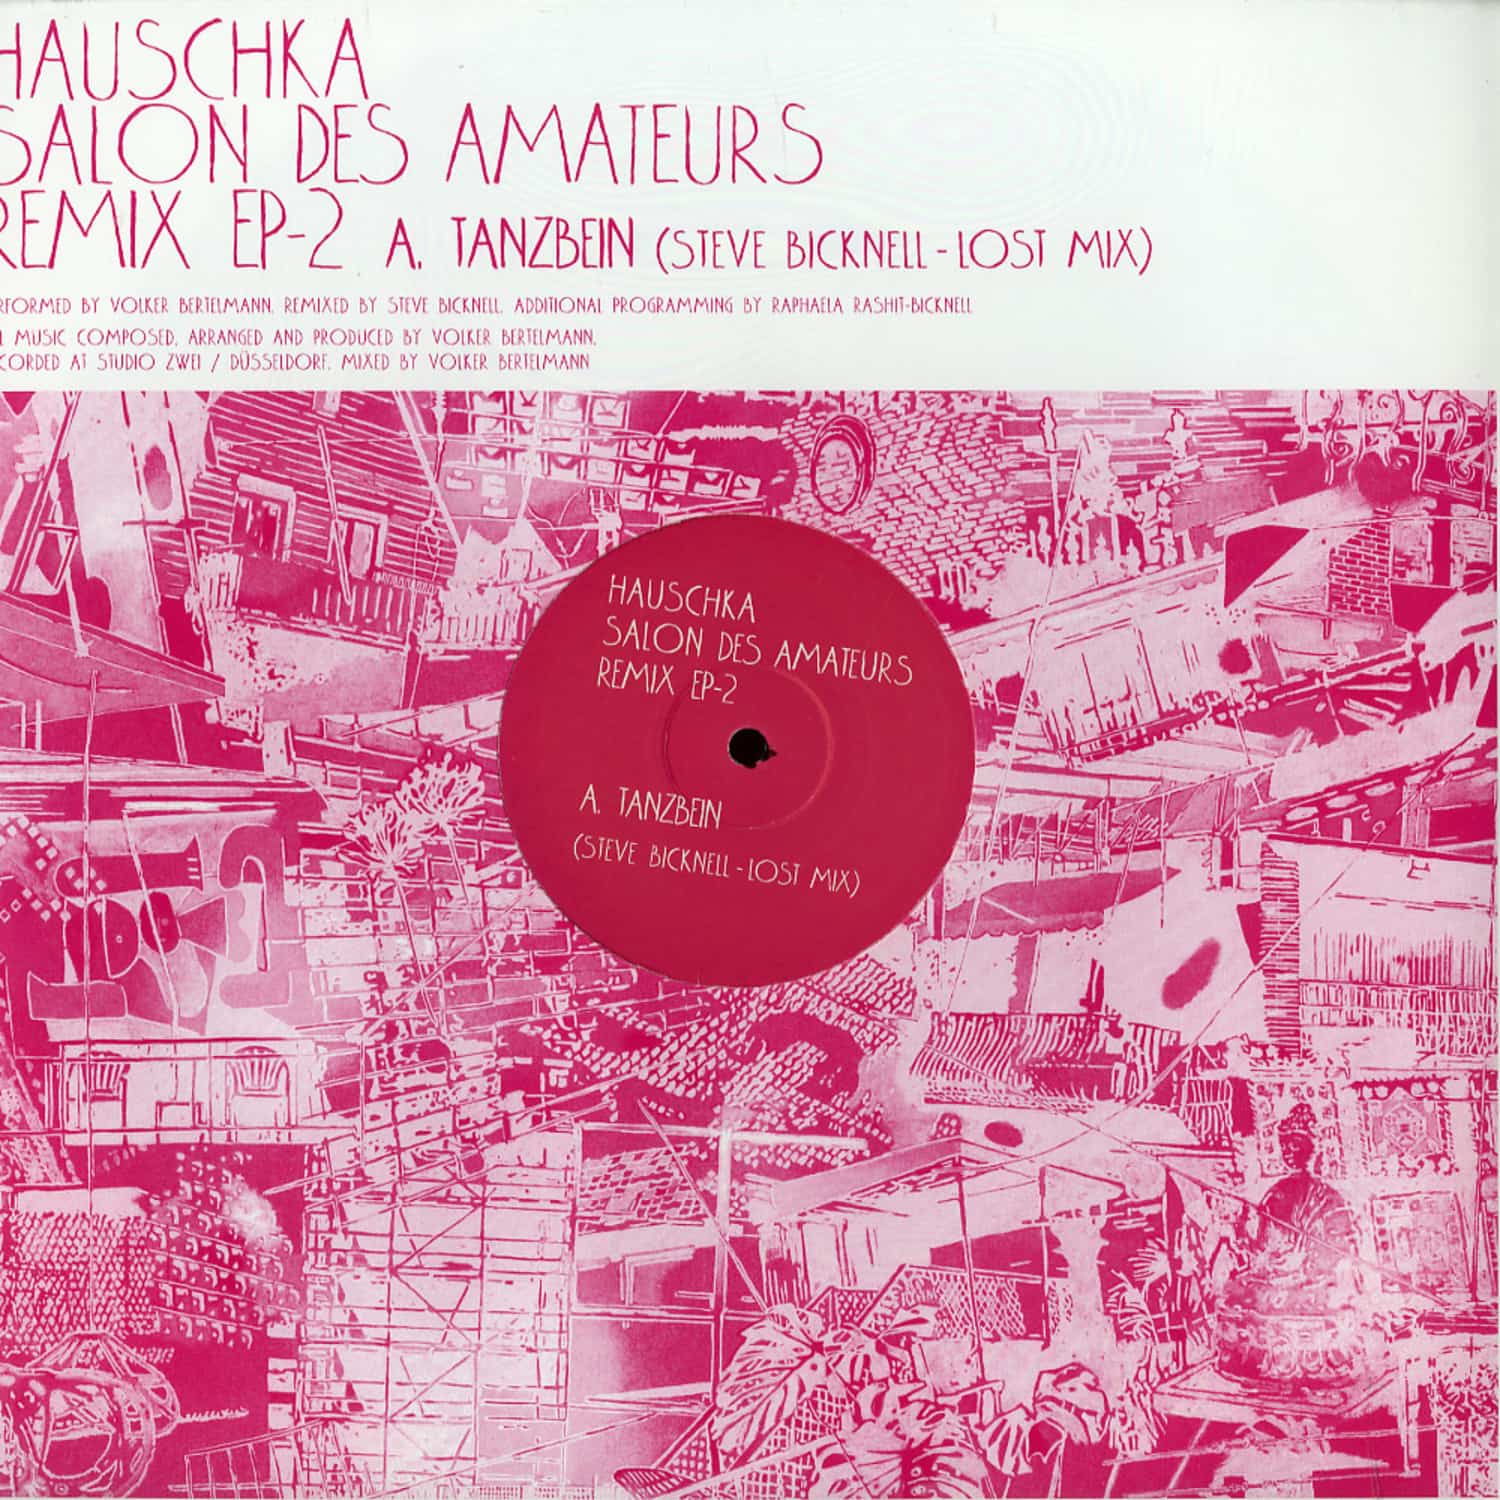 Hauschka - SALON DES AMATEURS REMIX EP 2